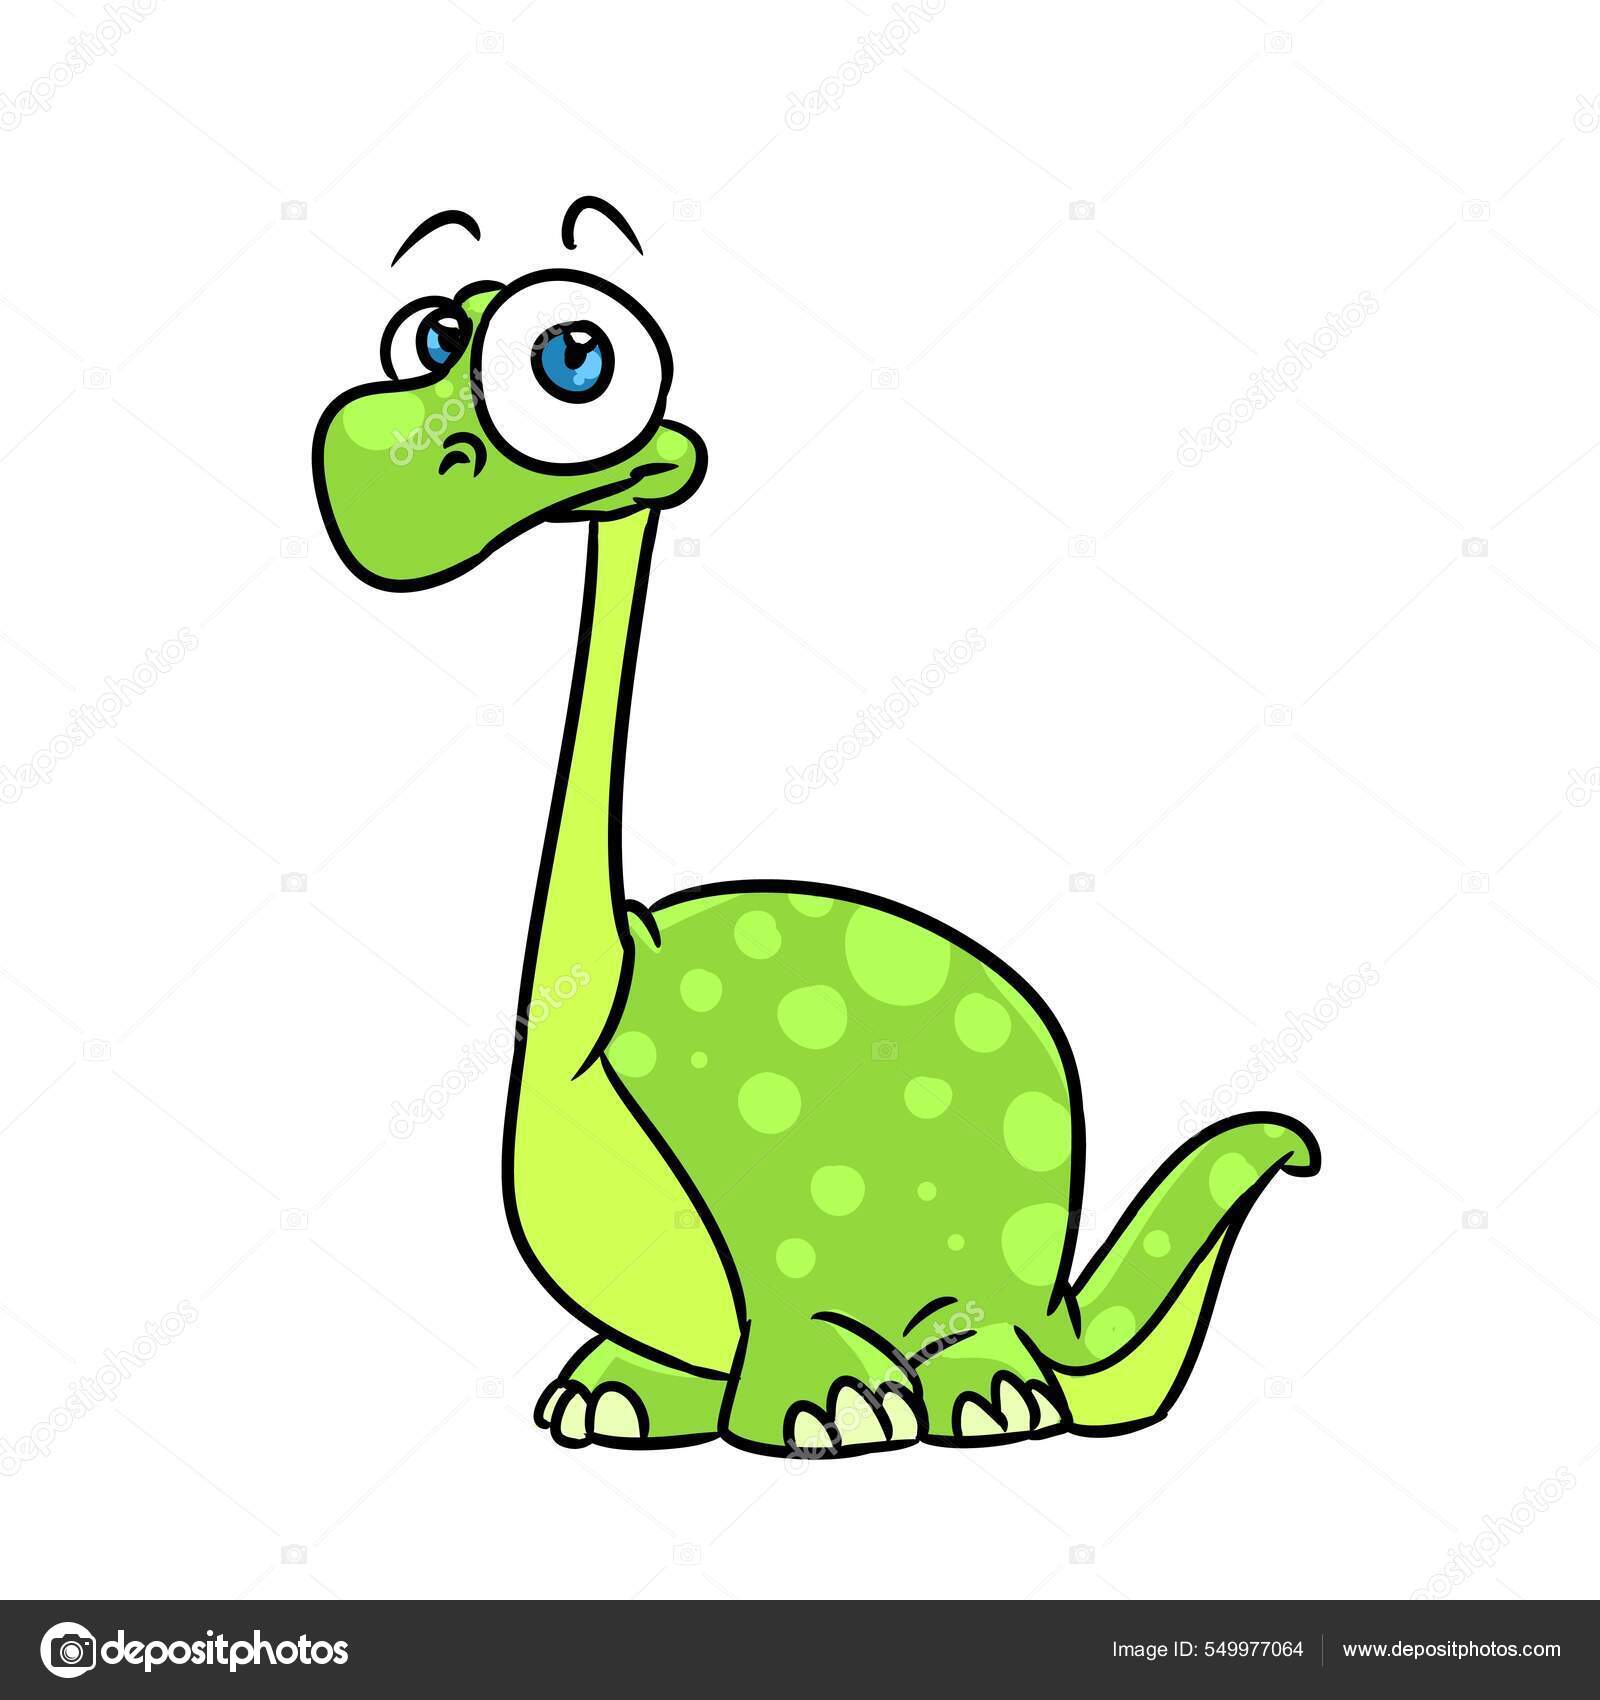 Desenhos animados bonitos do dinossauro verde ilustração royalty